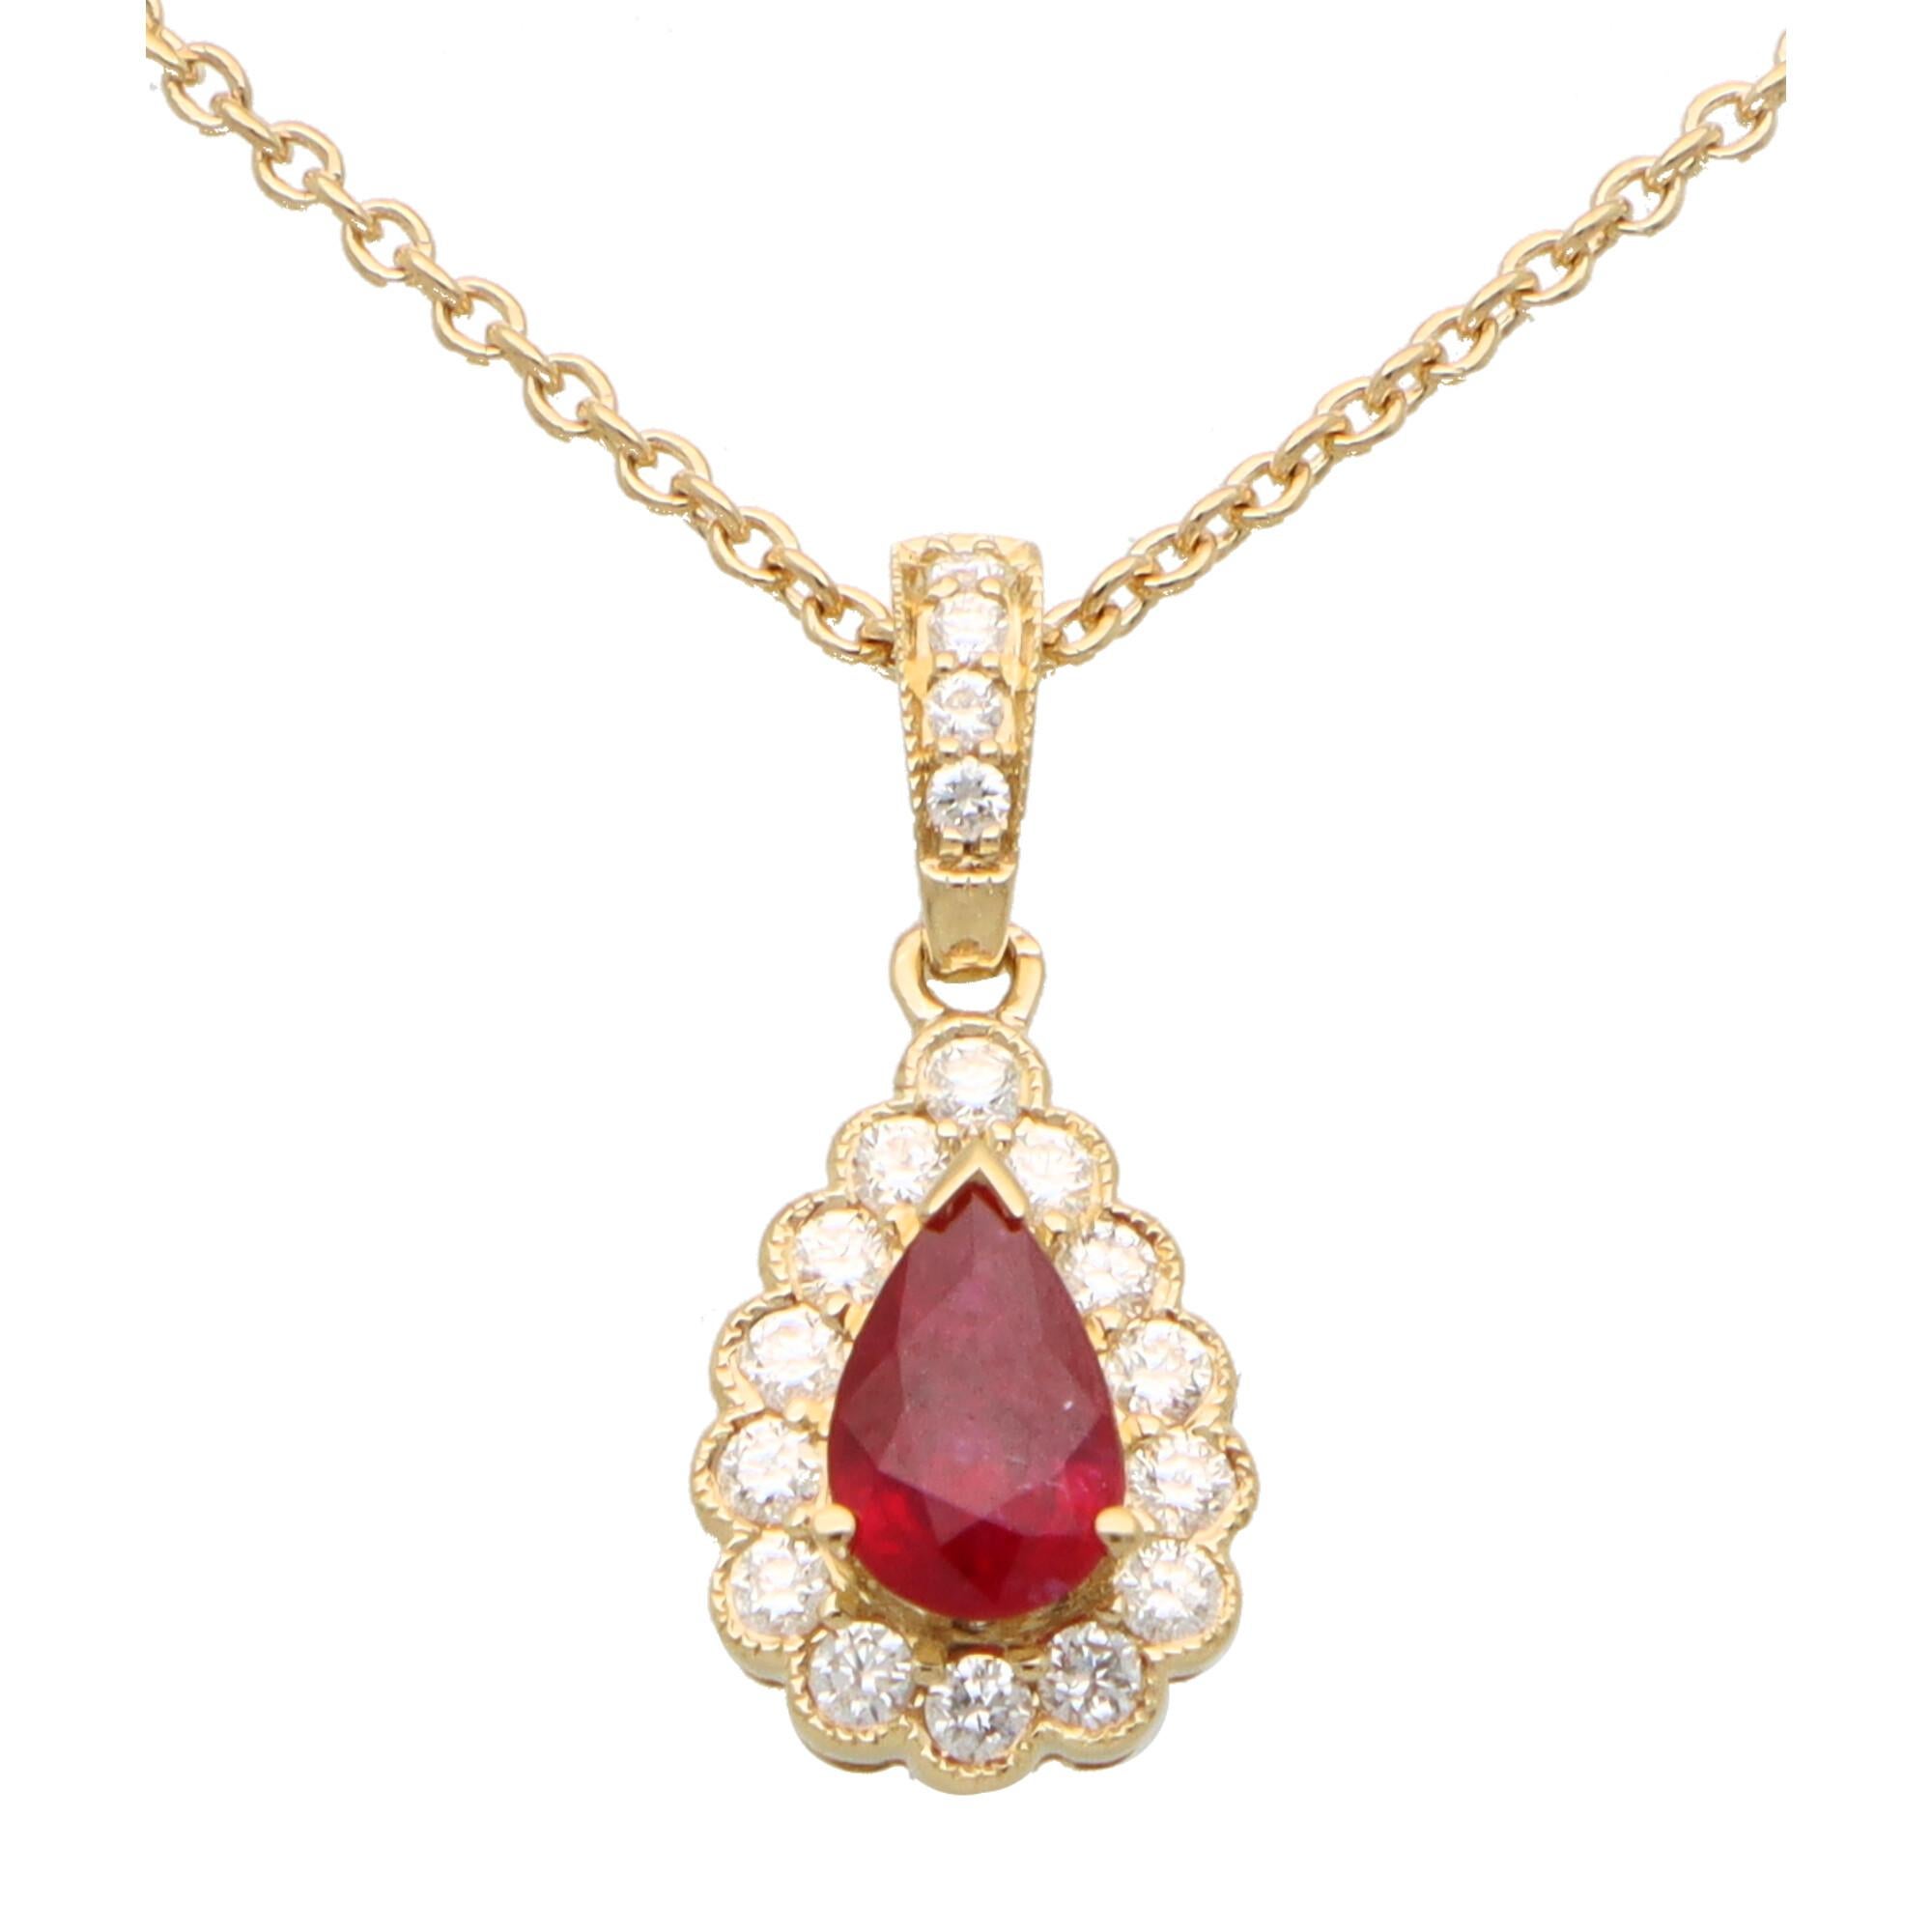  Un magnifique petit pendentif grappe de rubis et de diamants serti en or jaune 18 carats.

Le pendentif est serti au centre d'un magnifique rubis rouge en forme de poire, entouré de 14 diamants ronds étincelants de taille brillant. Le pendentif est